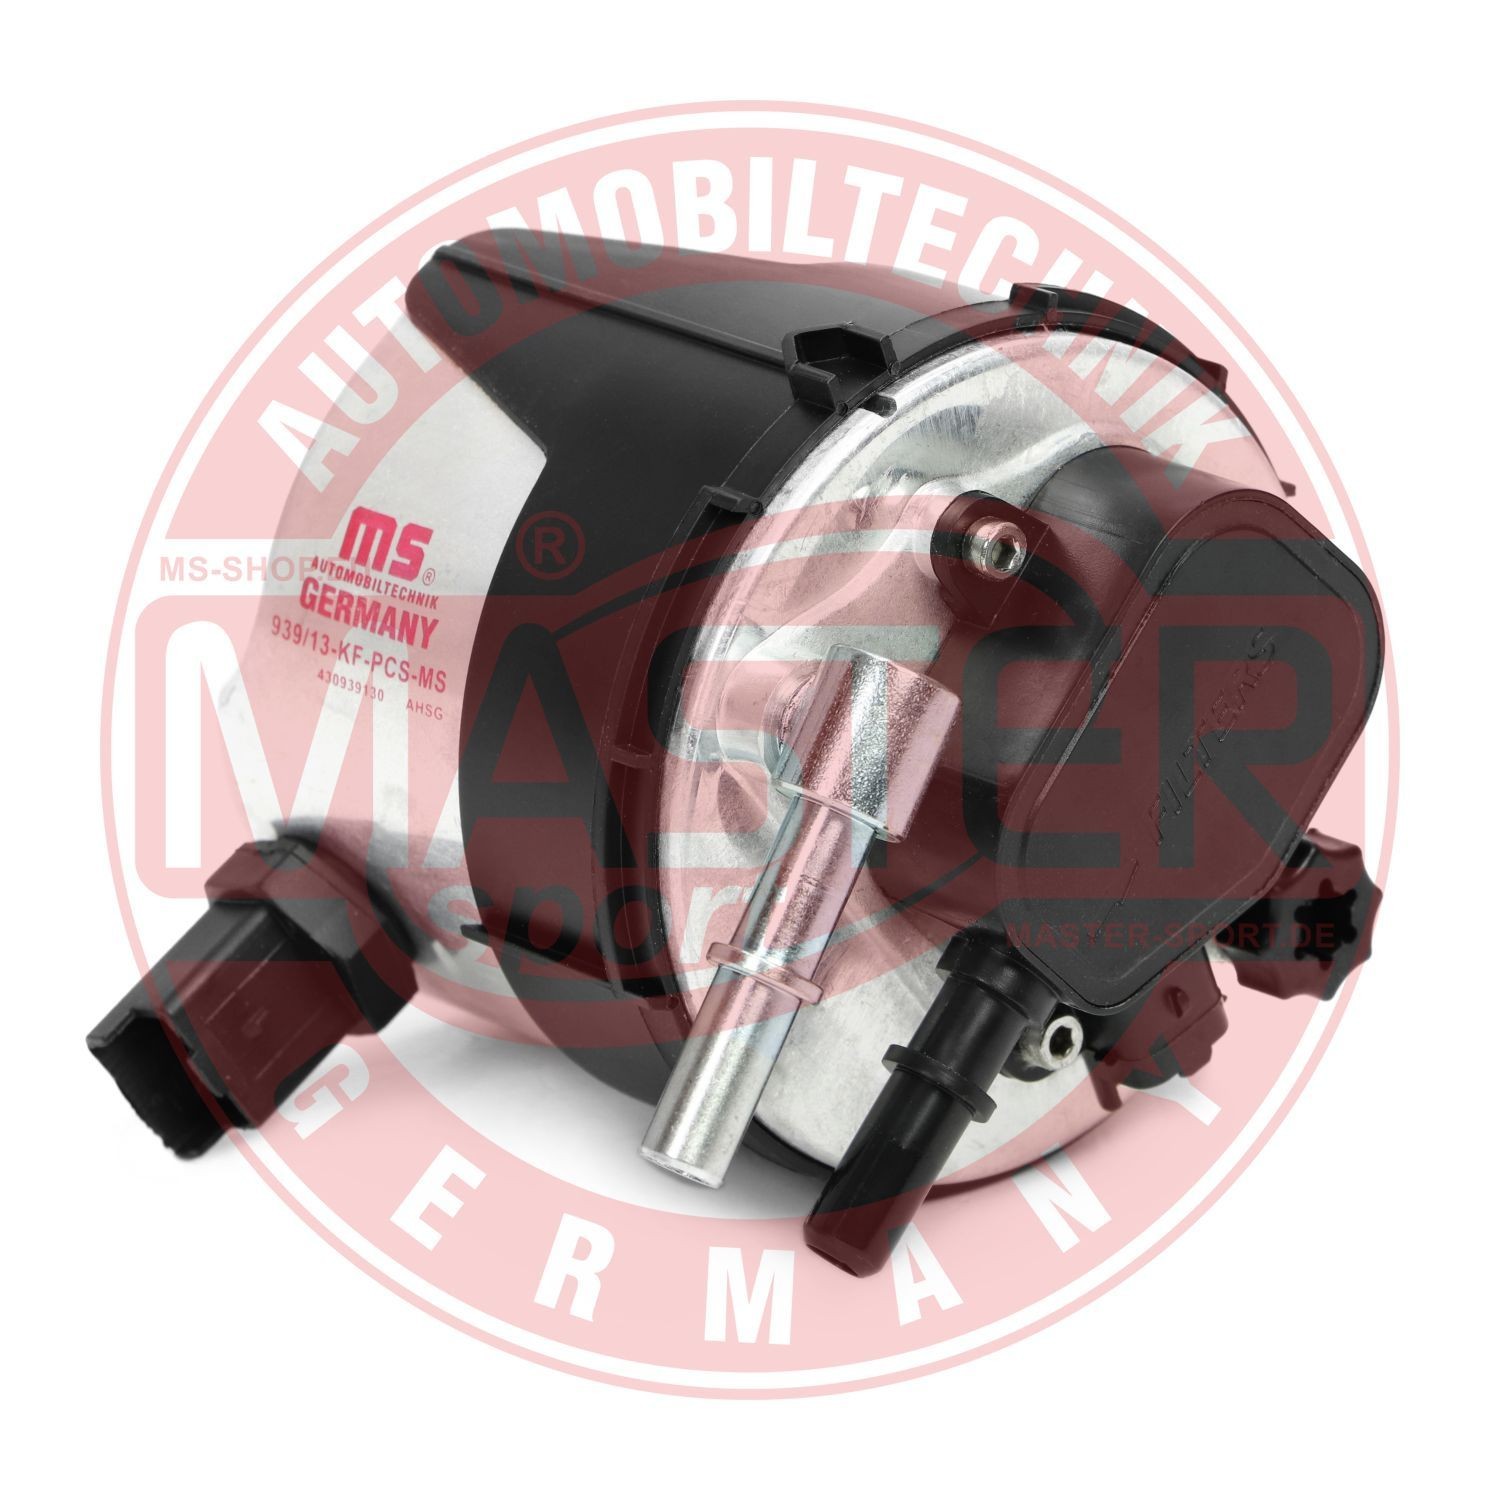 430939130 MASTER-SPORT 939/13-KF-PCS-MS Fuel filter 74 85 149 294